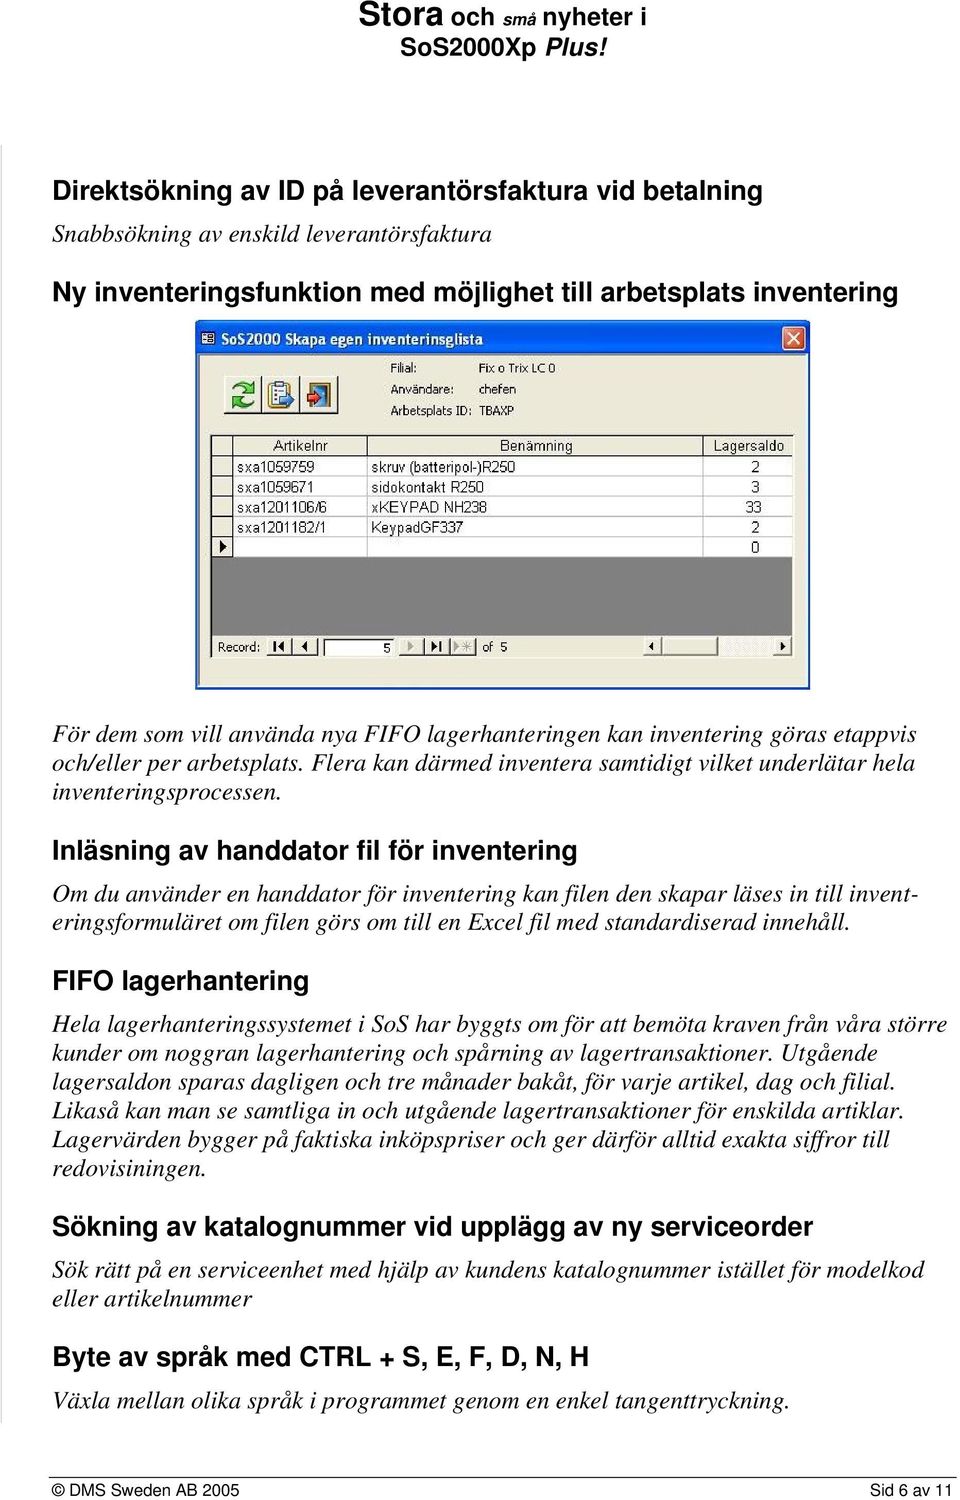 Inläsning av handdator fil för inventering Om du använder en handdator för inventering kan filen den skapar läses in till inventeringsformuläret om filen görs om till en Excel fil med standardiserad